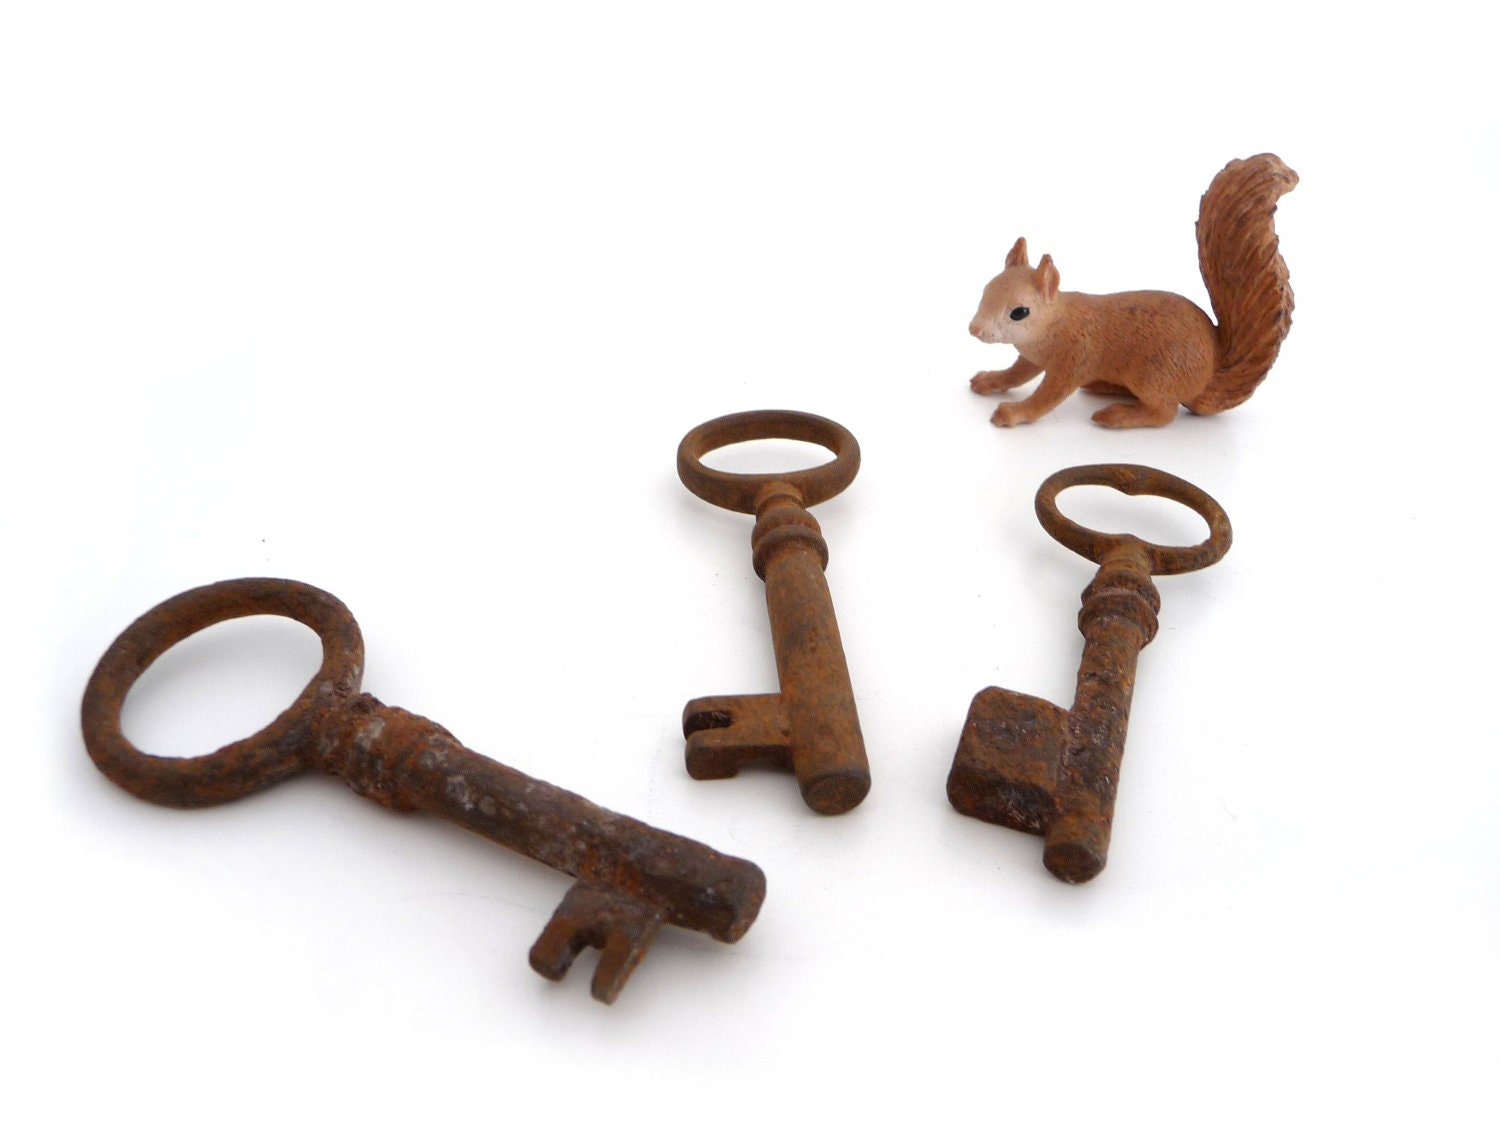 Skeleton Key, Set of 3 Vintage Keys, Skeleton, Steampunk, Supplies, Old Keys - madlyvintage